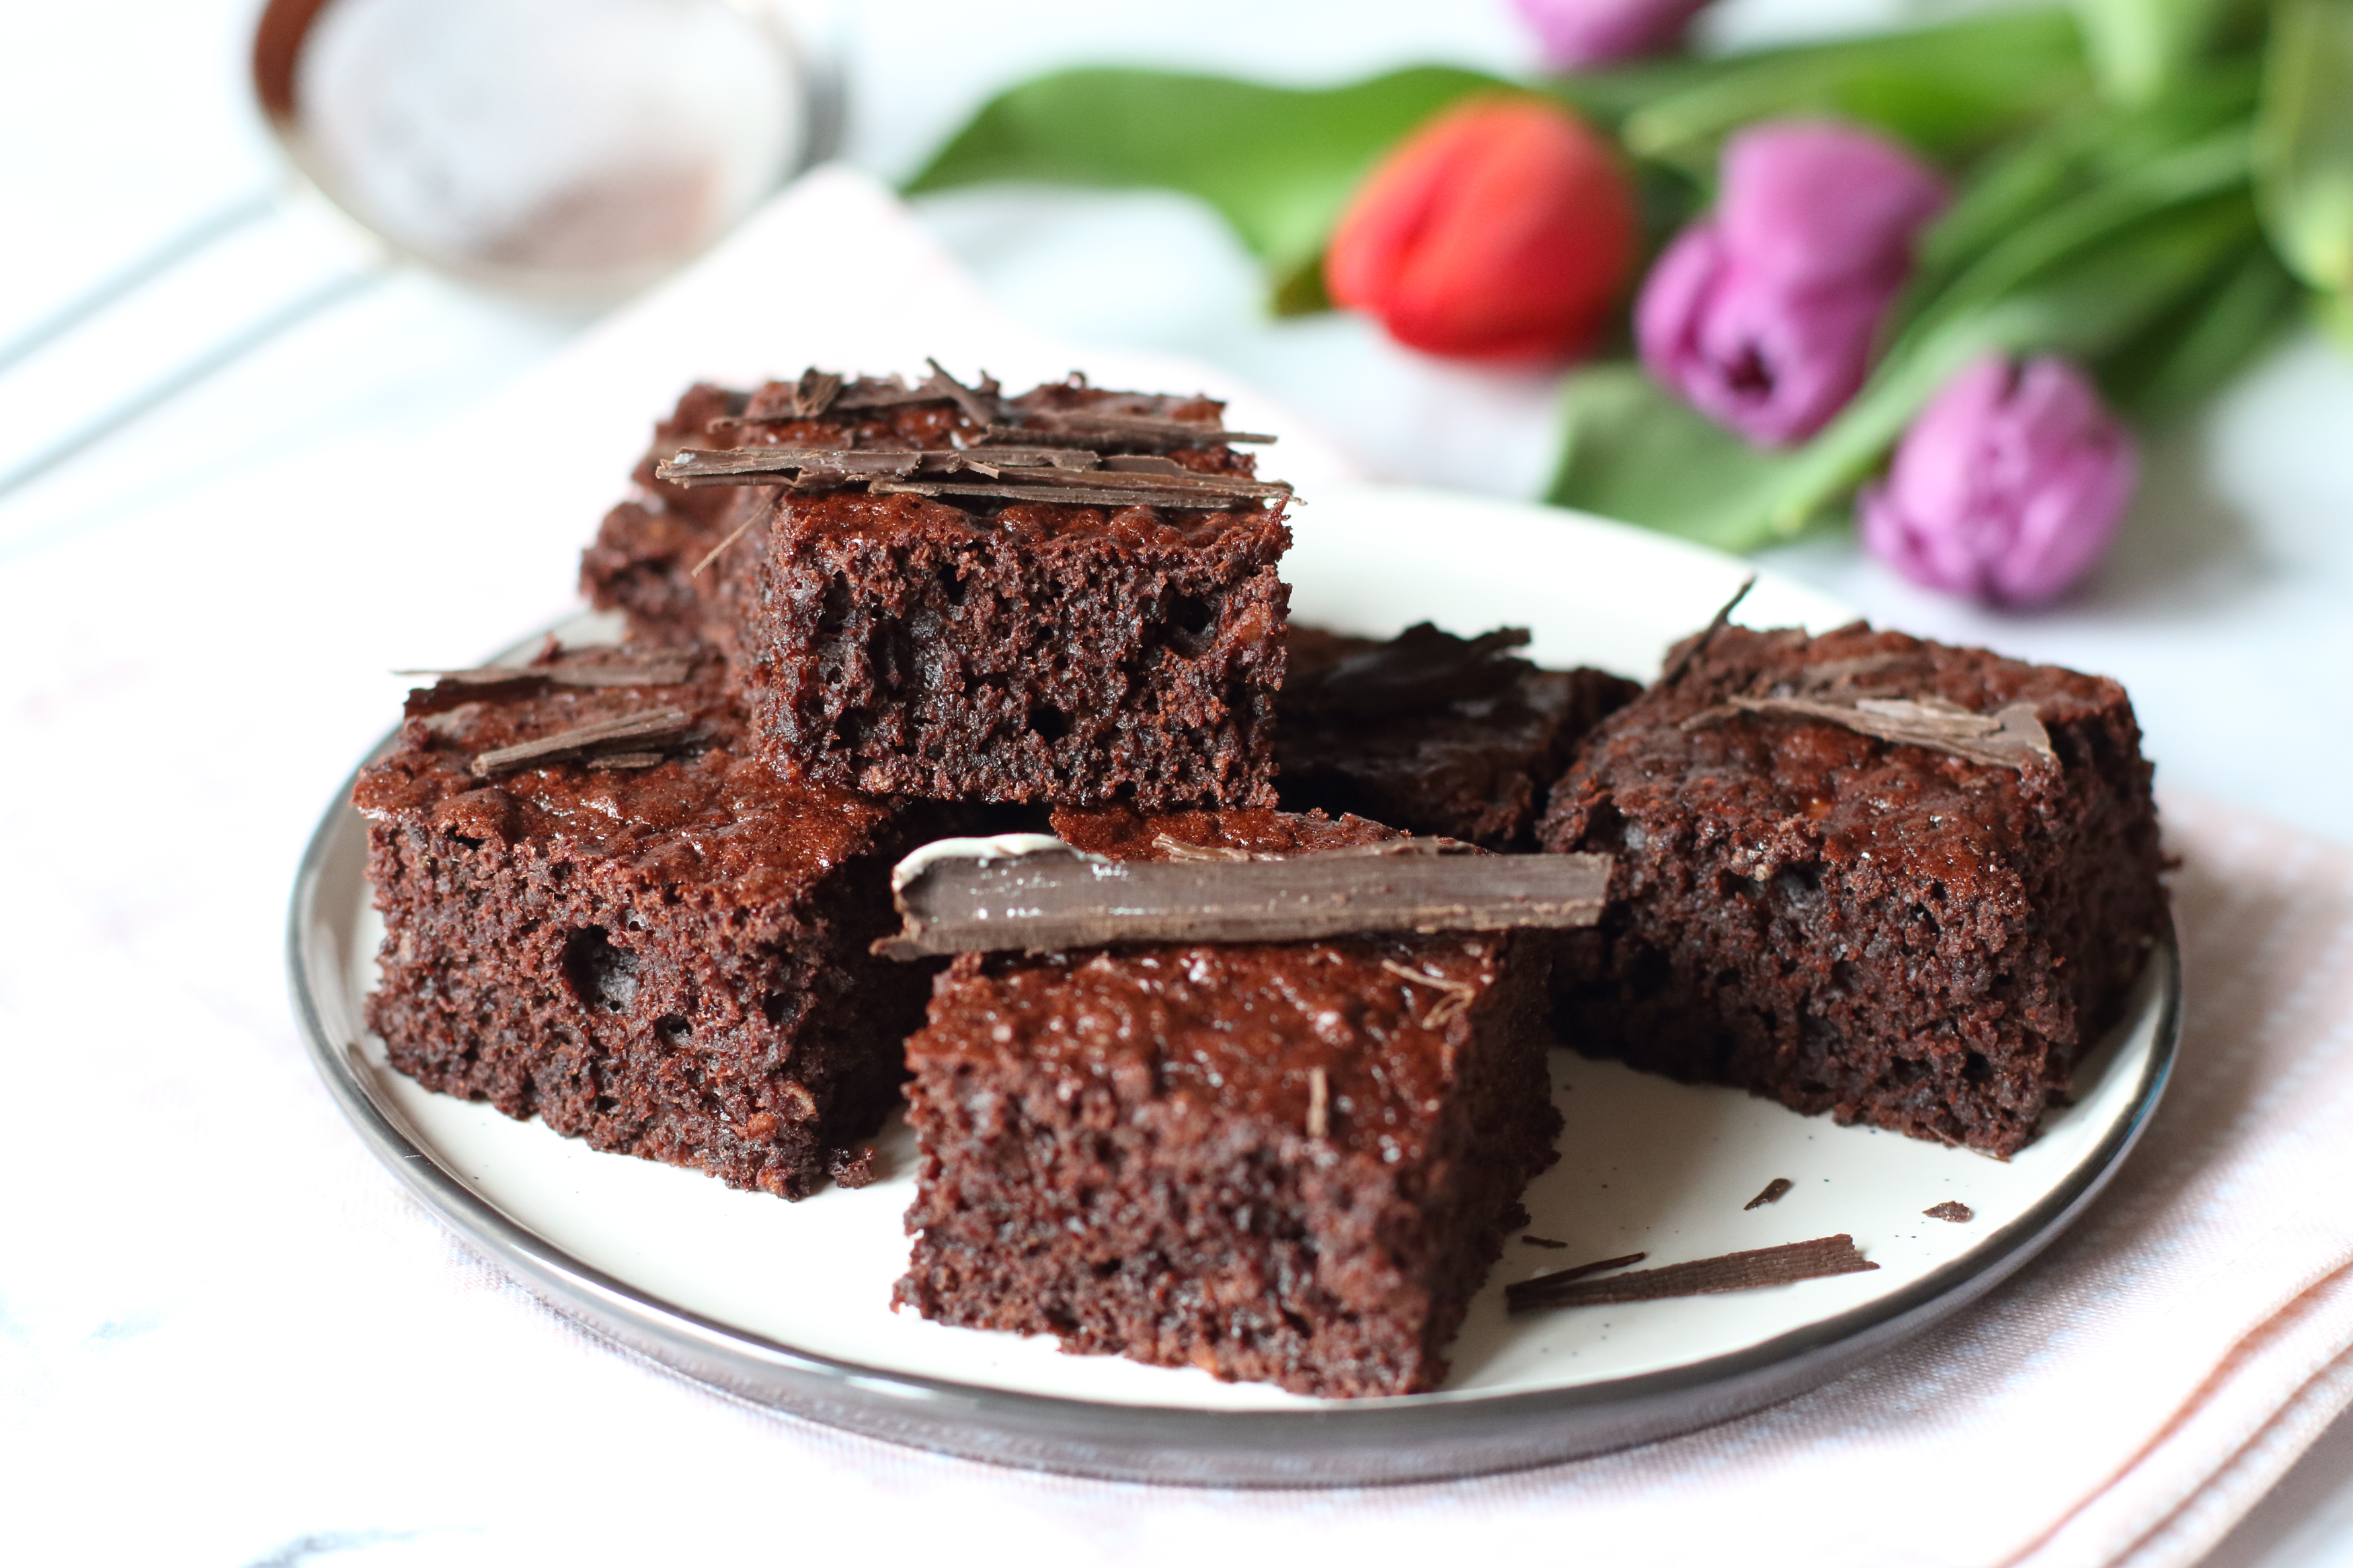 Egészséges ételek egyszerűen: kalóriaszegény brownie recept - kiskegyed.hu